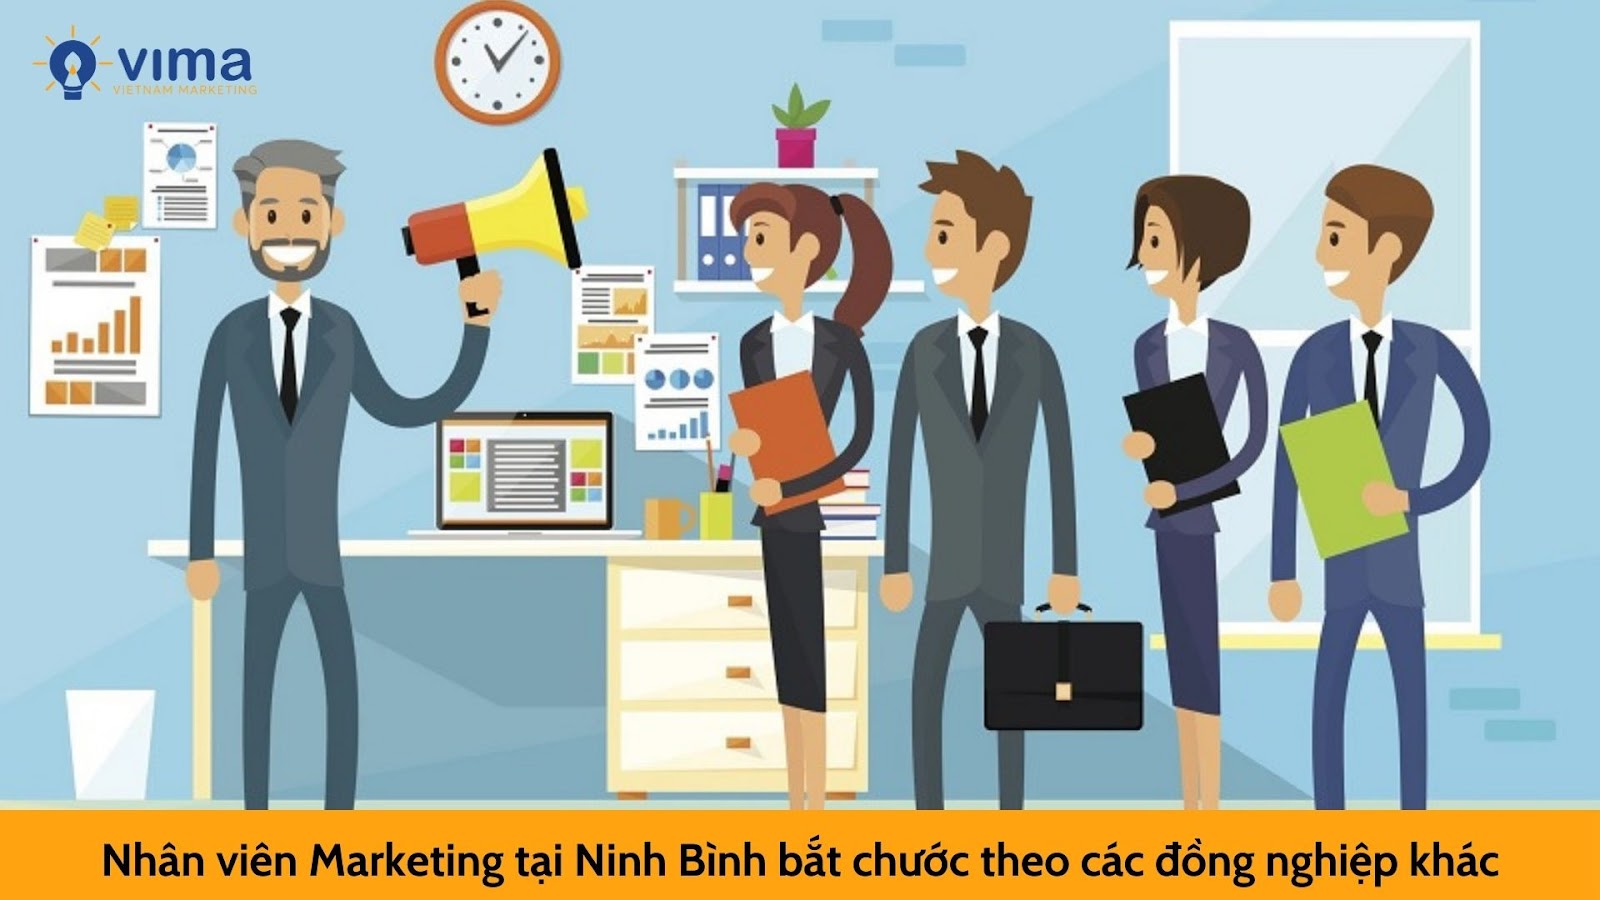 Nhân viên Marketing tại Ninh Bình bắt chước theo các đồng nghiệp khác